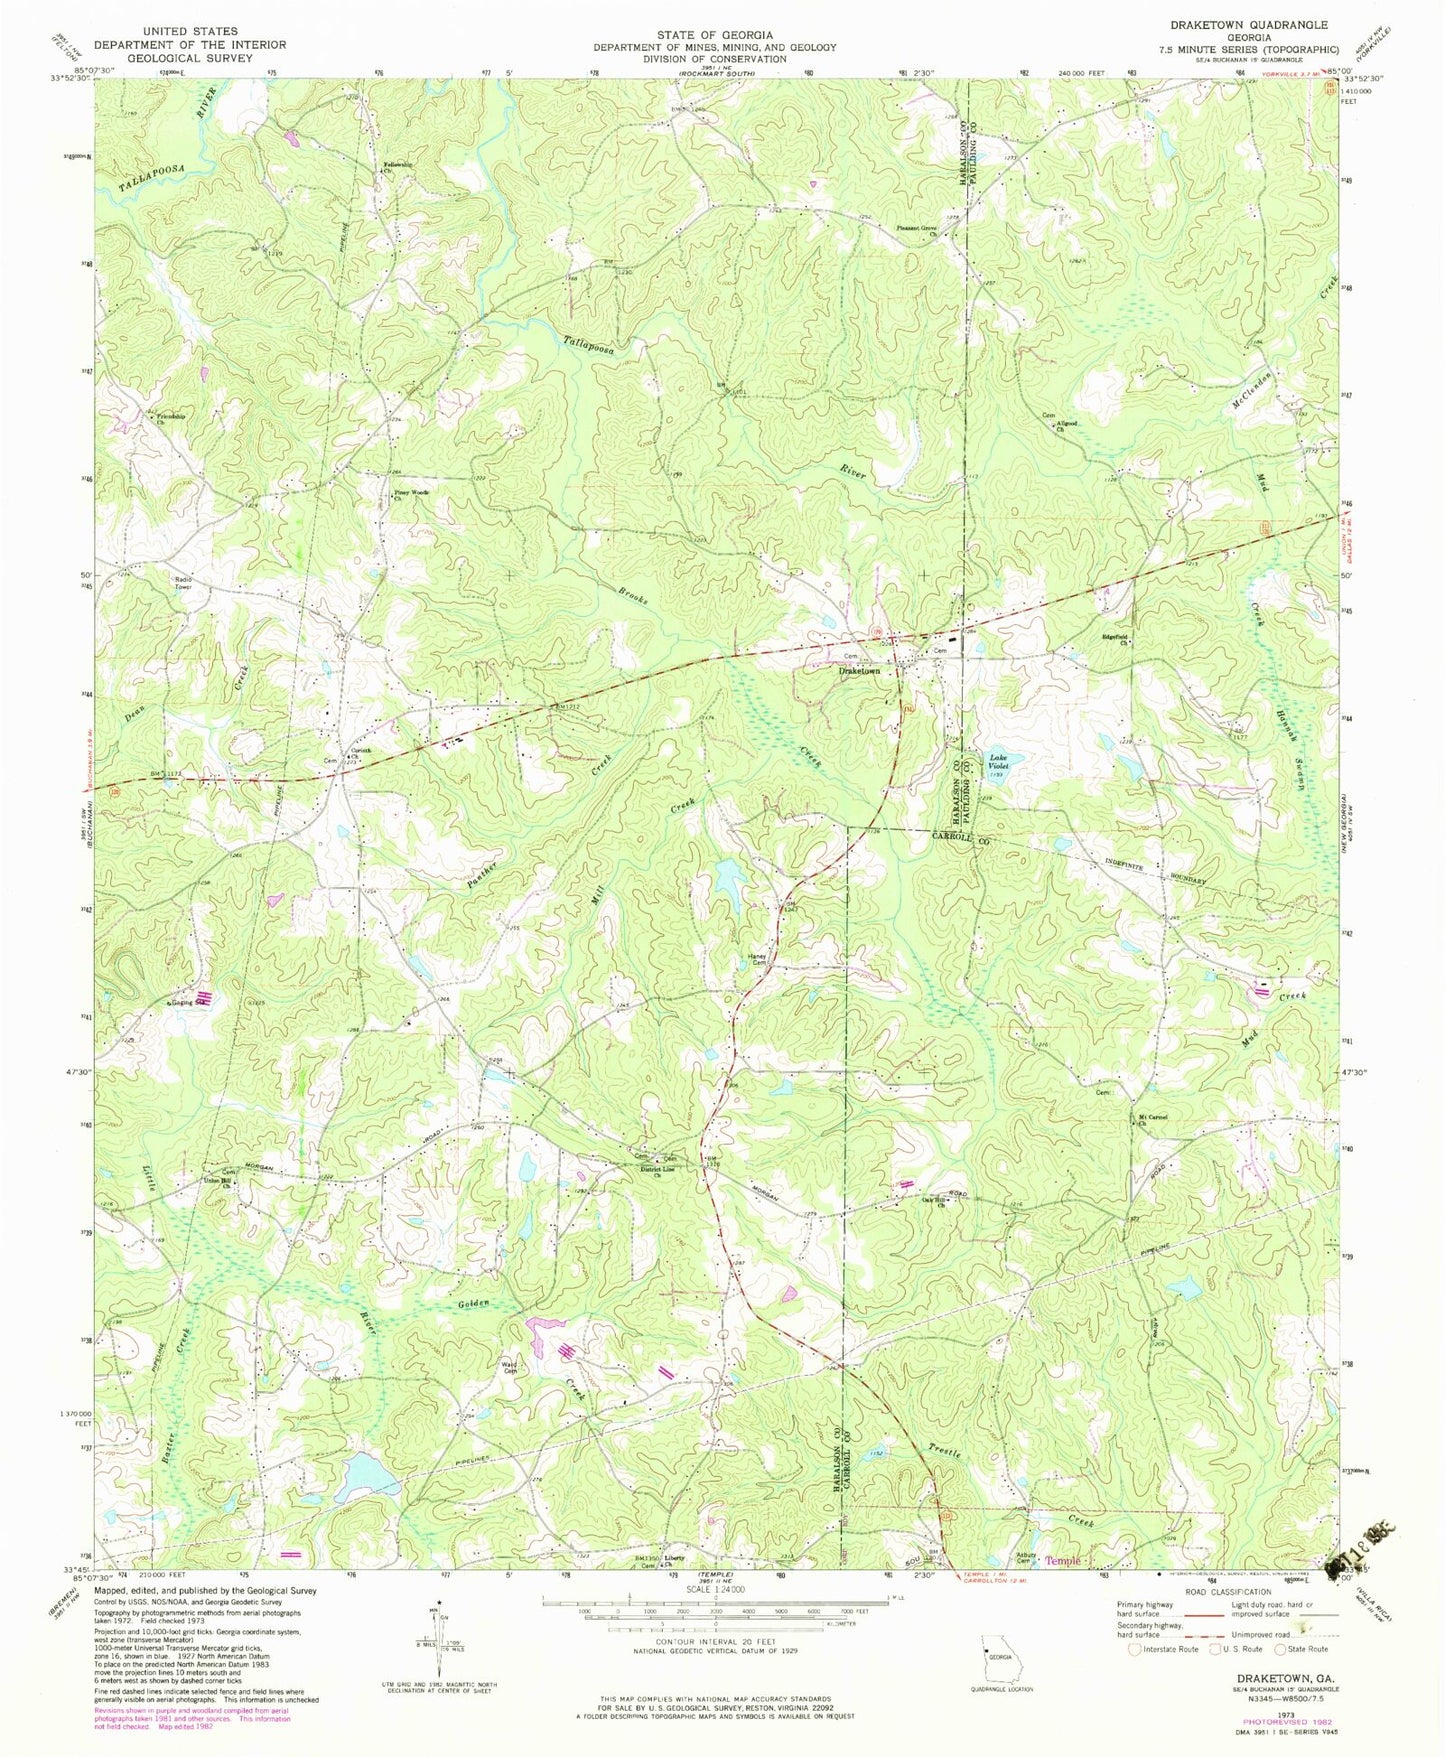 Classic USGS Draketown Georgia 7.5'x7.5' Topo Map Image